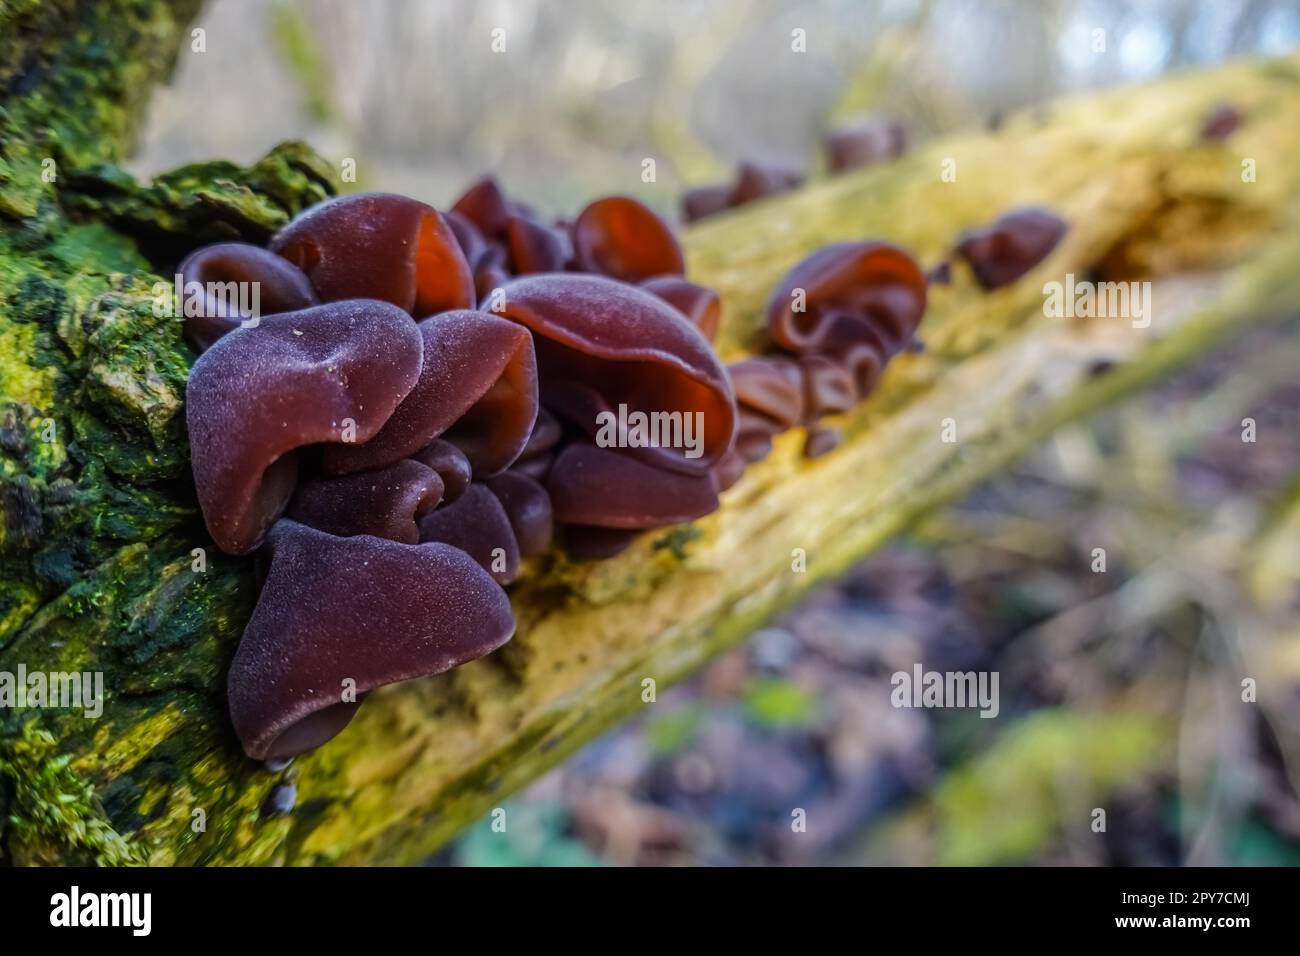 funghi orecchie di legno fresco su un cespuglio vecchio morto nella foresta Foto Stock